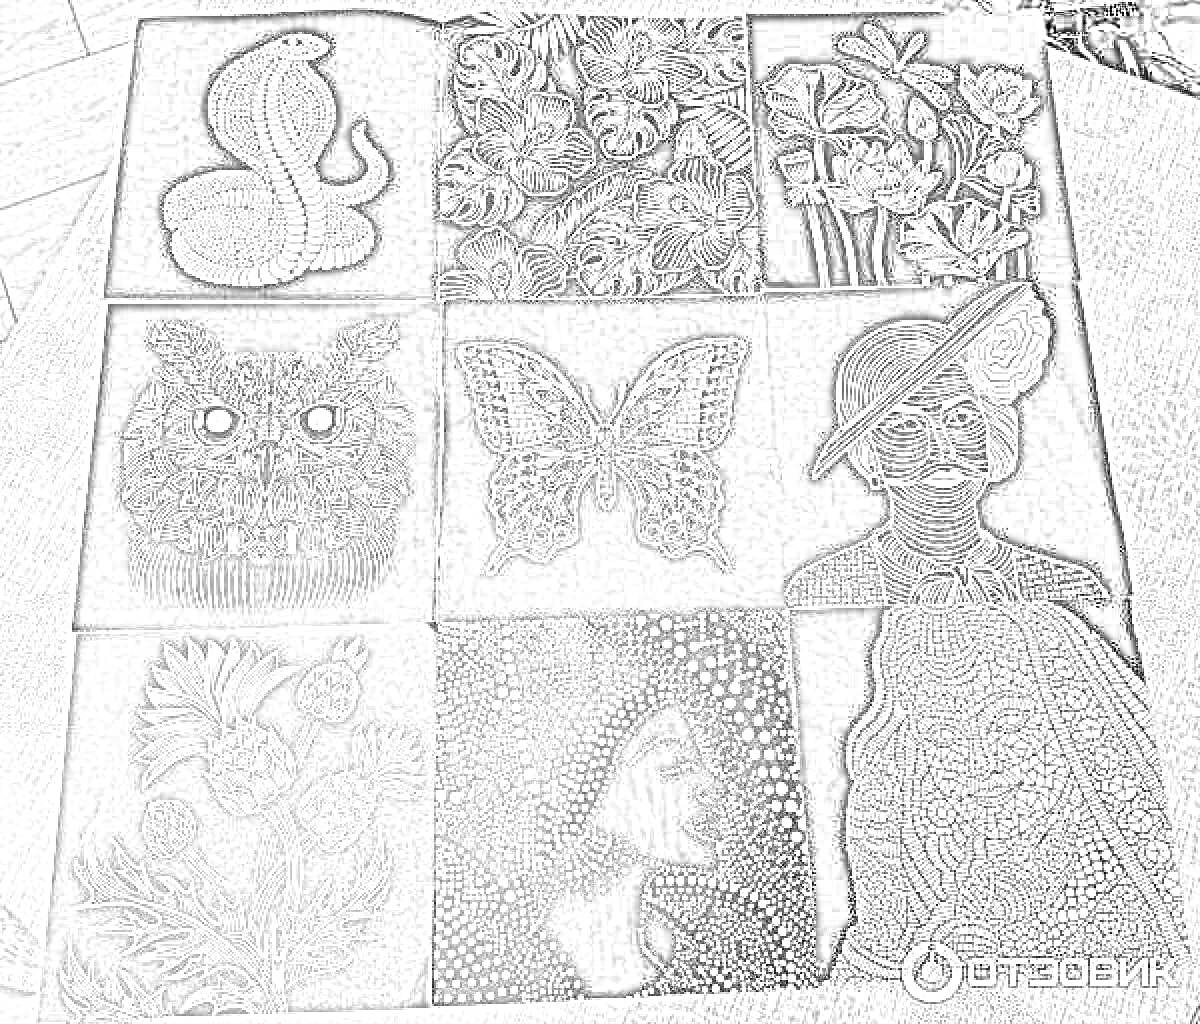 Раскраска Радужная магия на черном фоне: змея, цветы, сова, бабочка, женский портрет в шляпе, абстрактный портрет